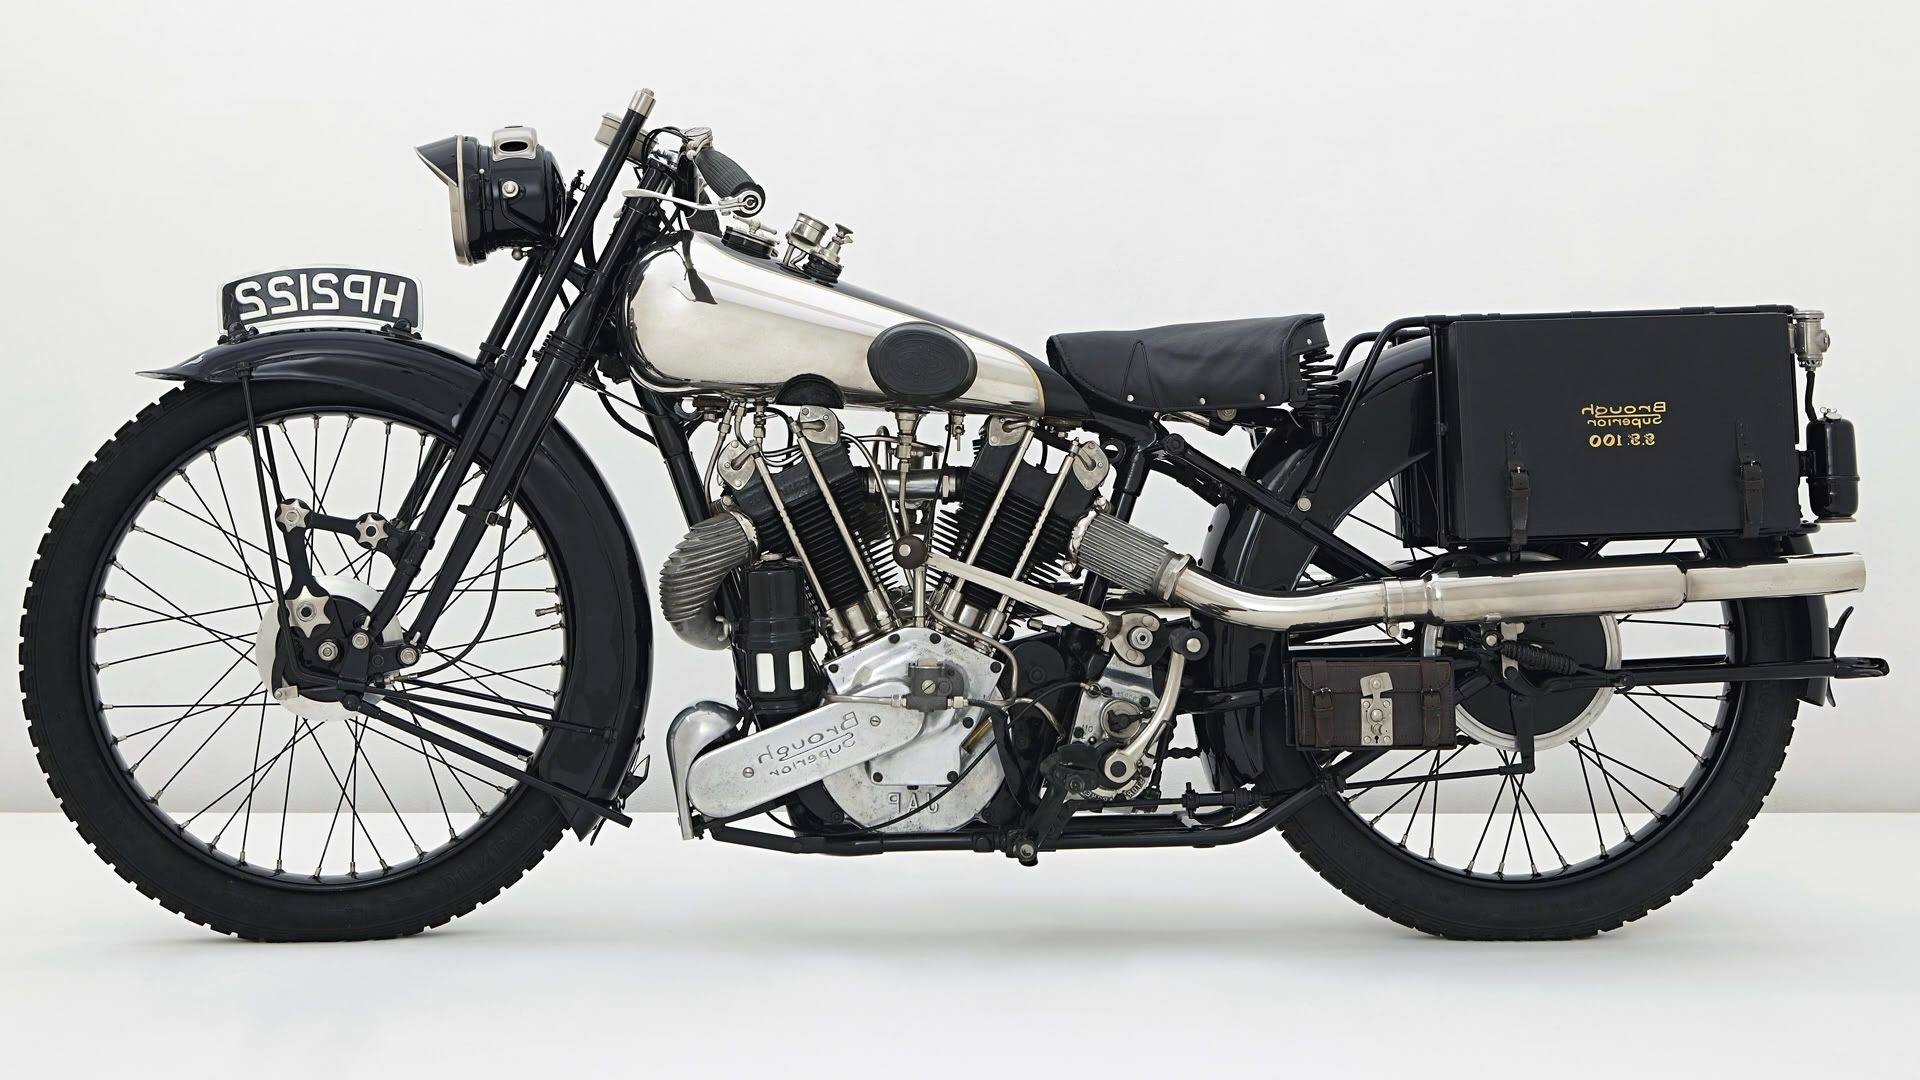 fondo de pantalla de motocicleta 1920x1080,vehículo terrestre,vehículo,vehículo de motor,motocicleta,coche